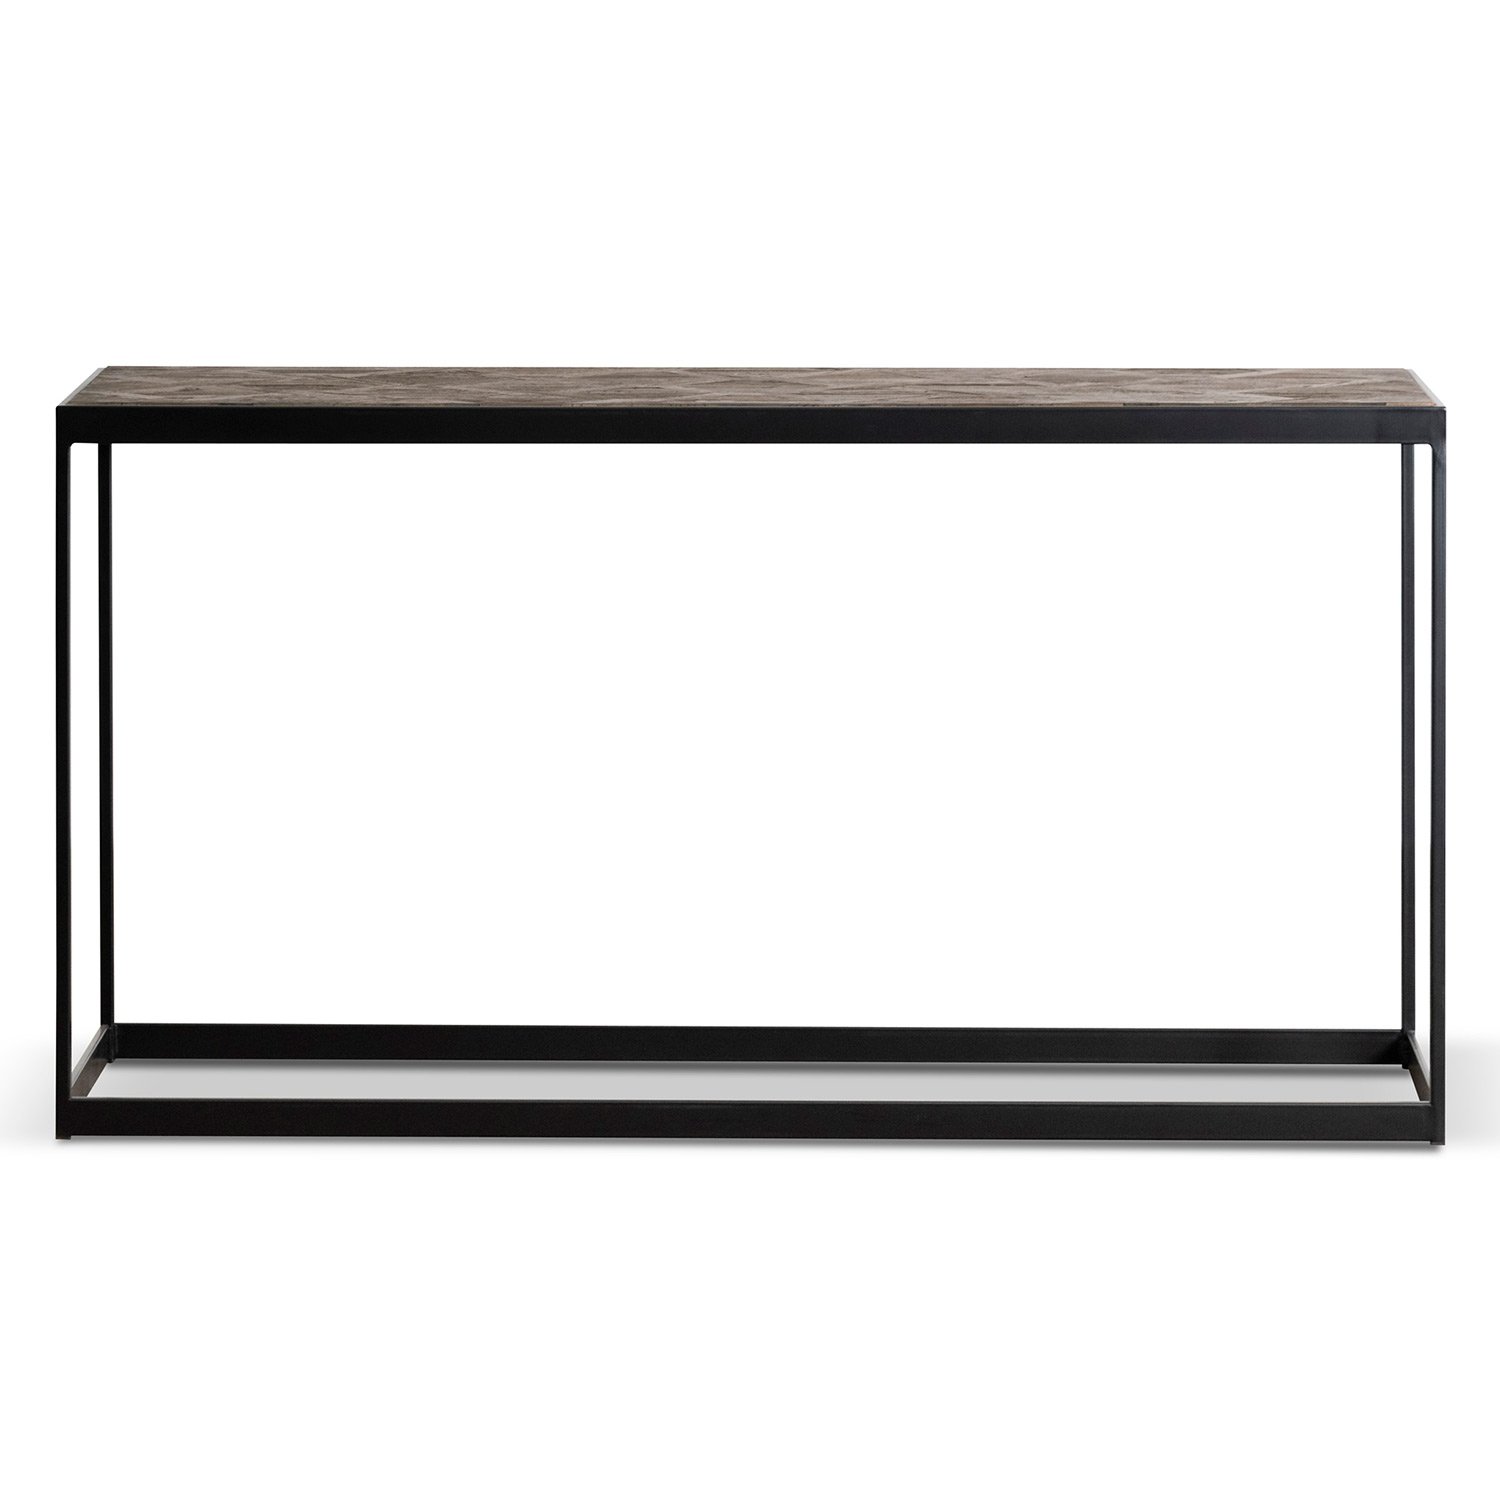 Yutani Console Table in Dark Natural - Black Frame - Console